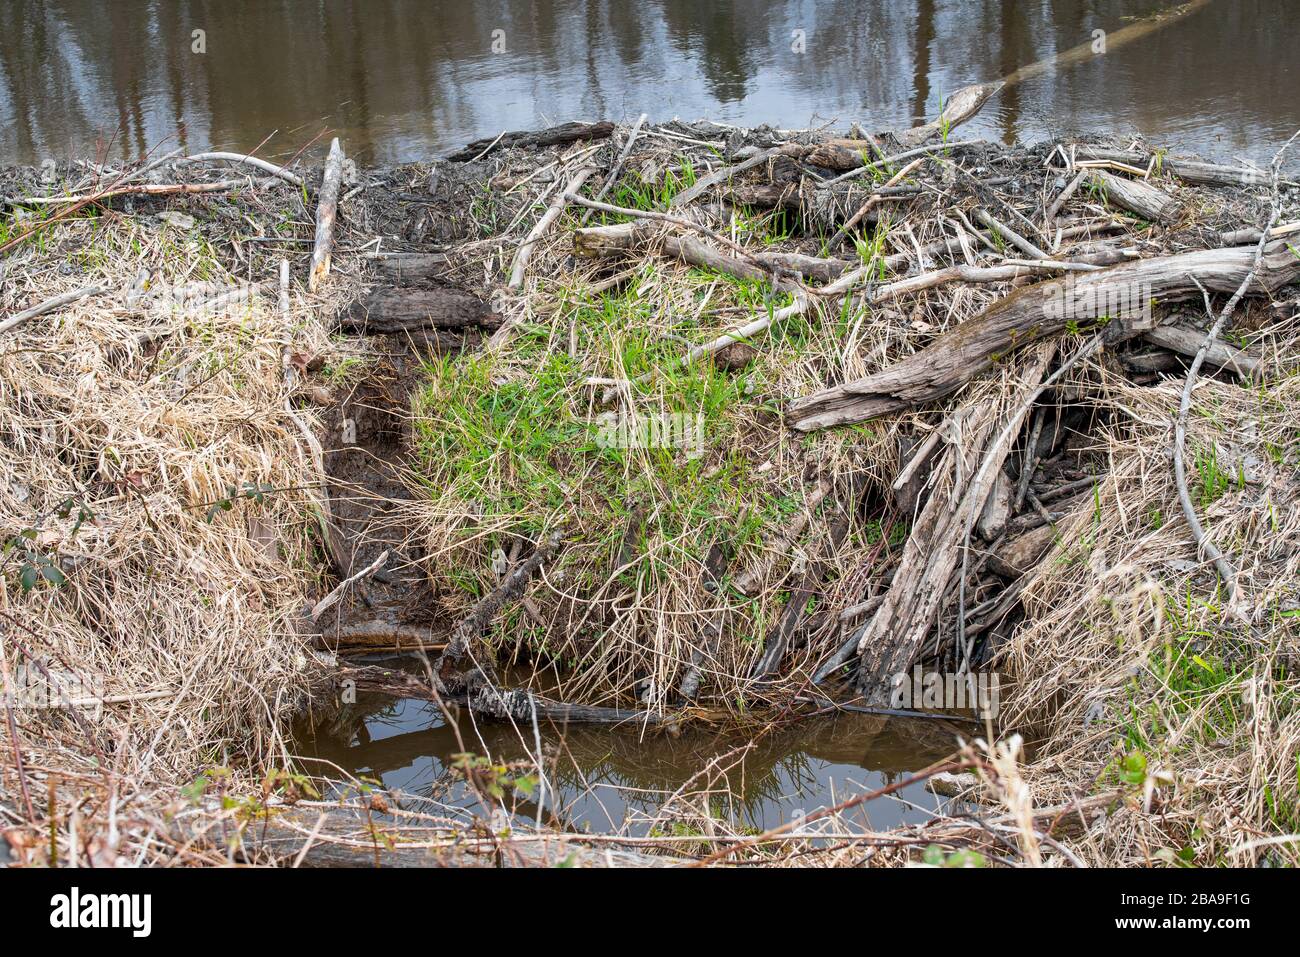 Una fotografia ravvicinata di una diga di castoro vicino alla riva di un fiume. Foto Stock